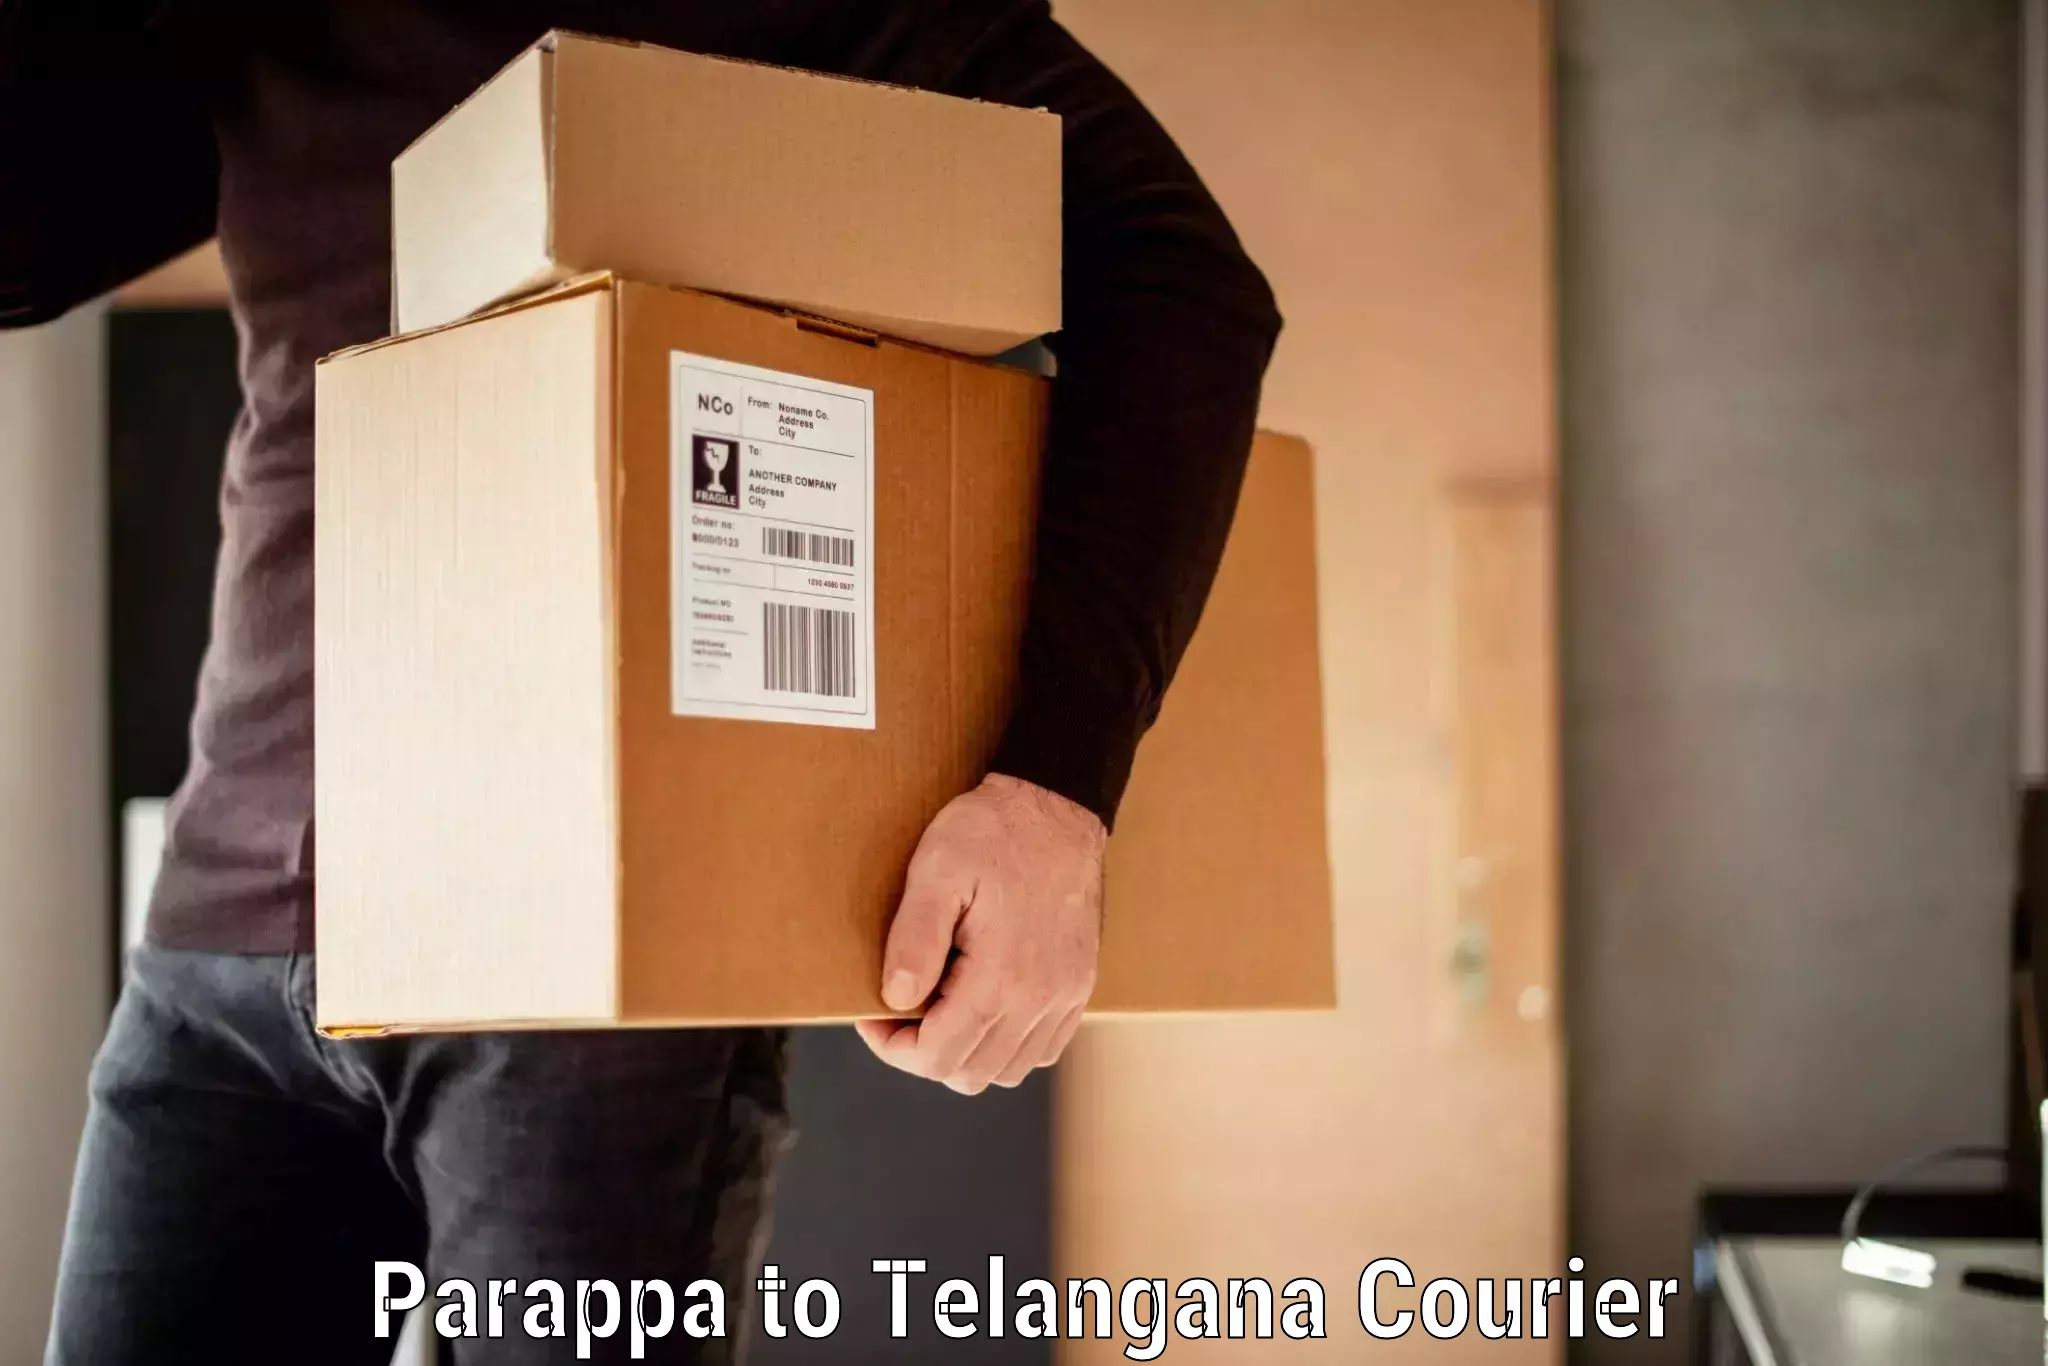 Baggage shipping experts Parappa to Telangana